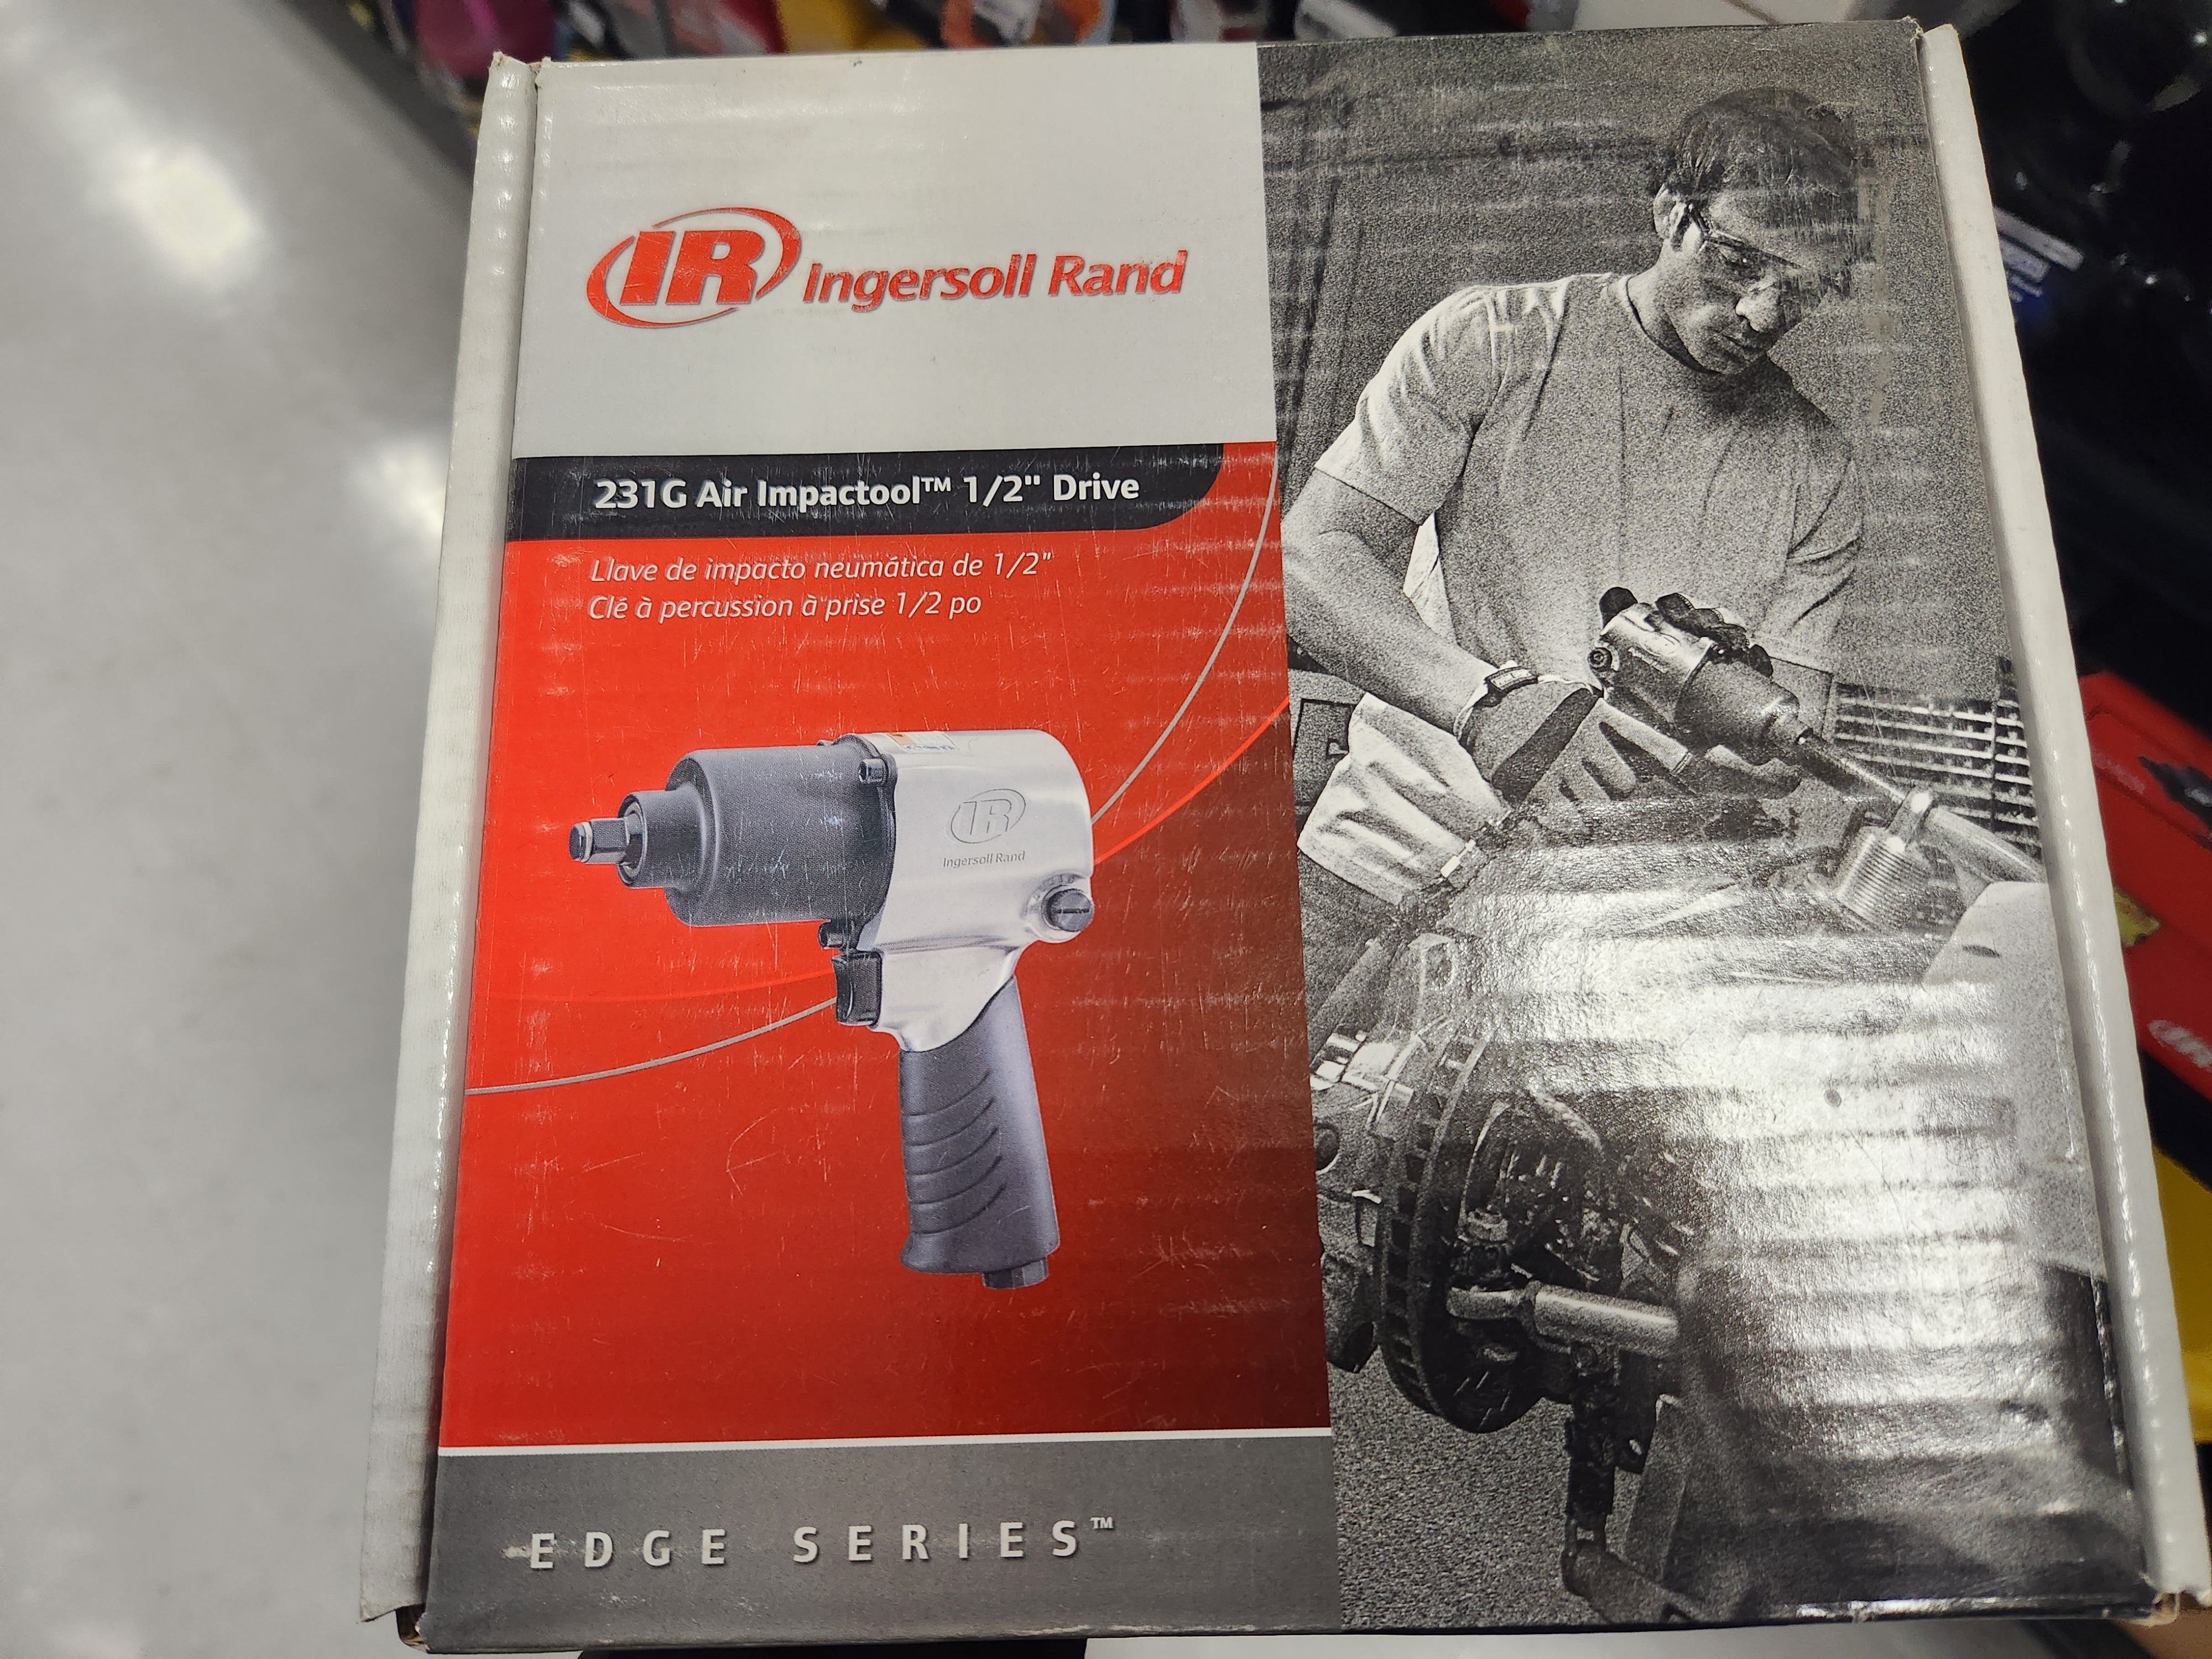 Ingersoll Rand 231G Edge Series 1/2-Inch Air Impactool